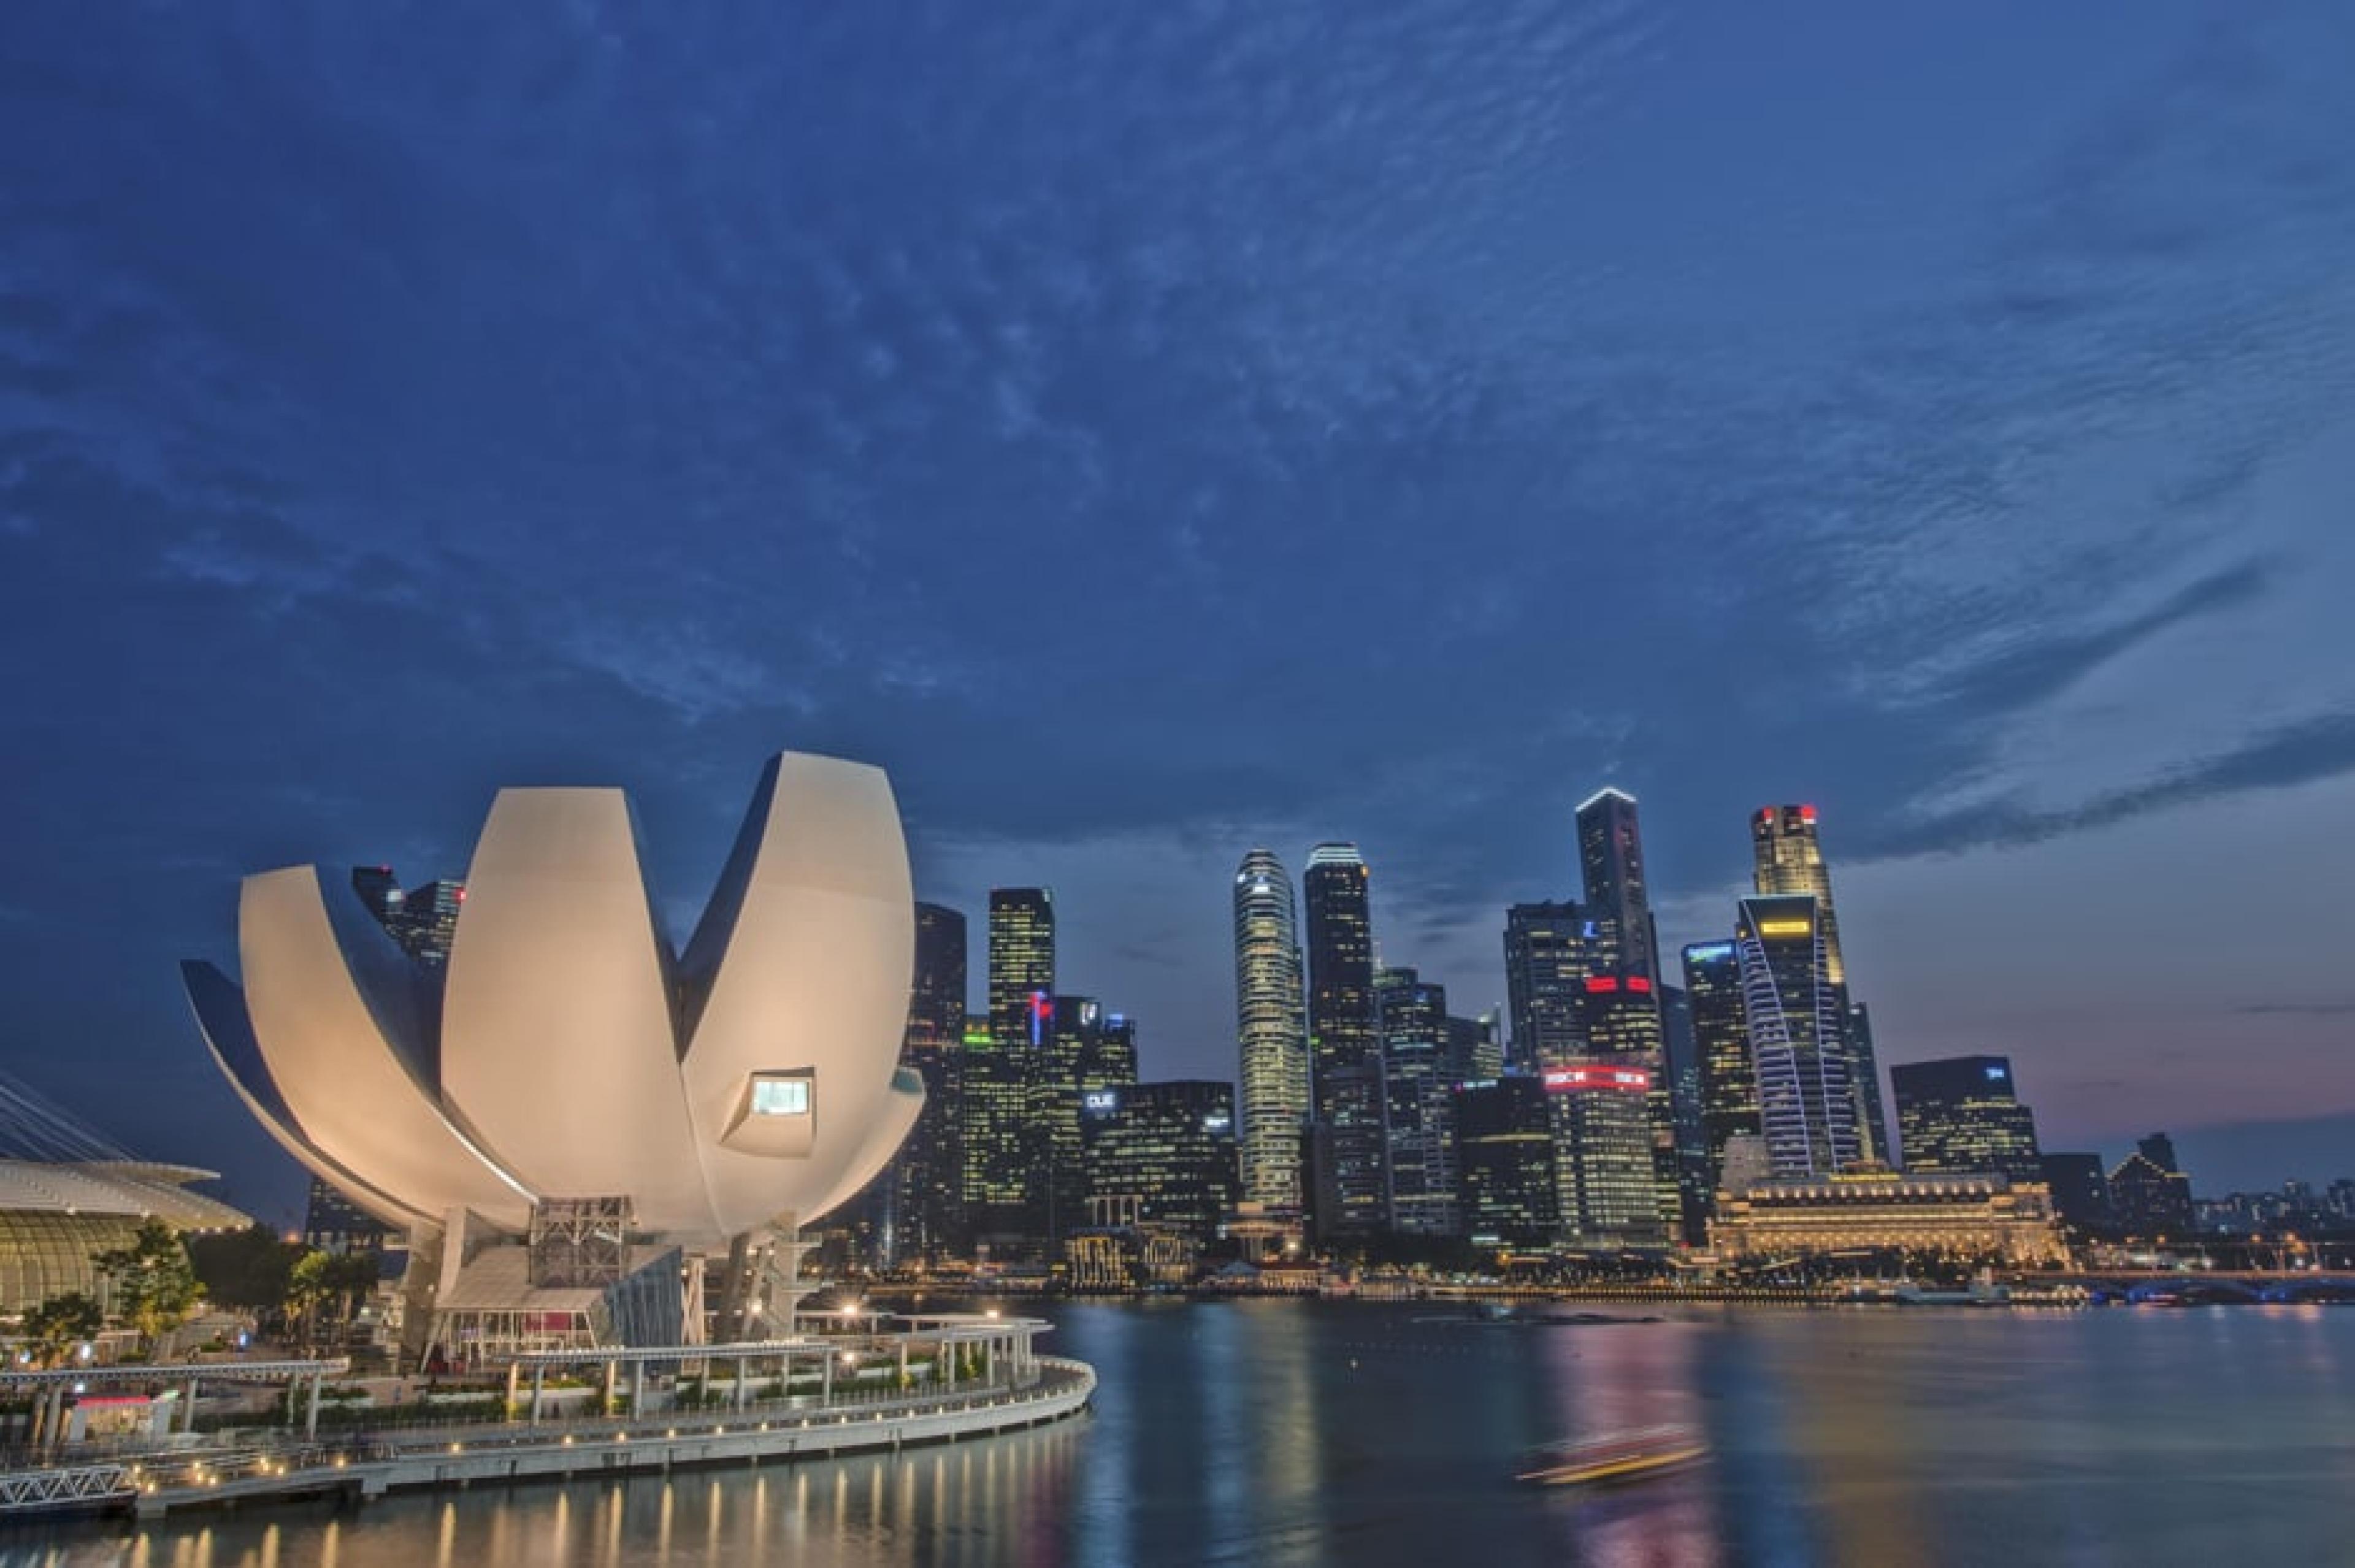 Panoramic view of Arts Science Museum, Singapore